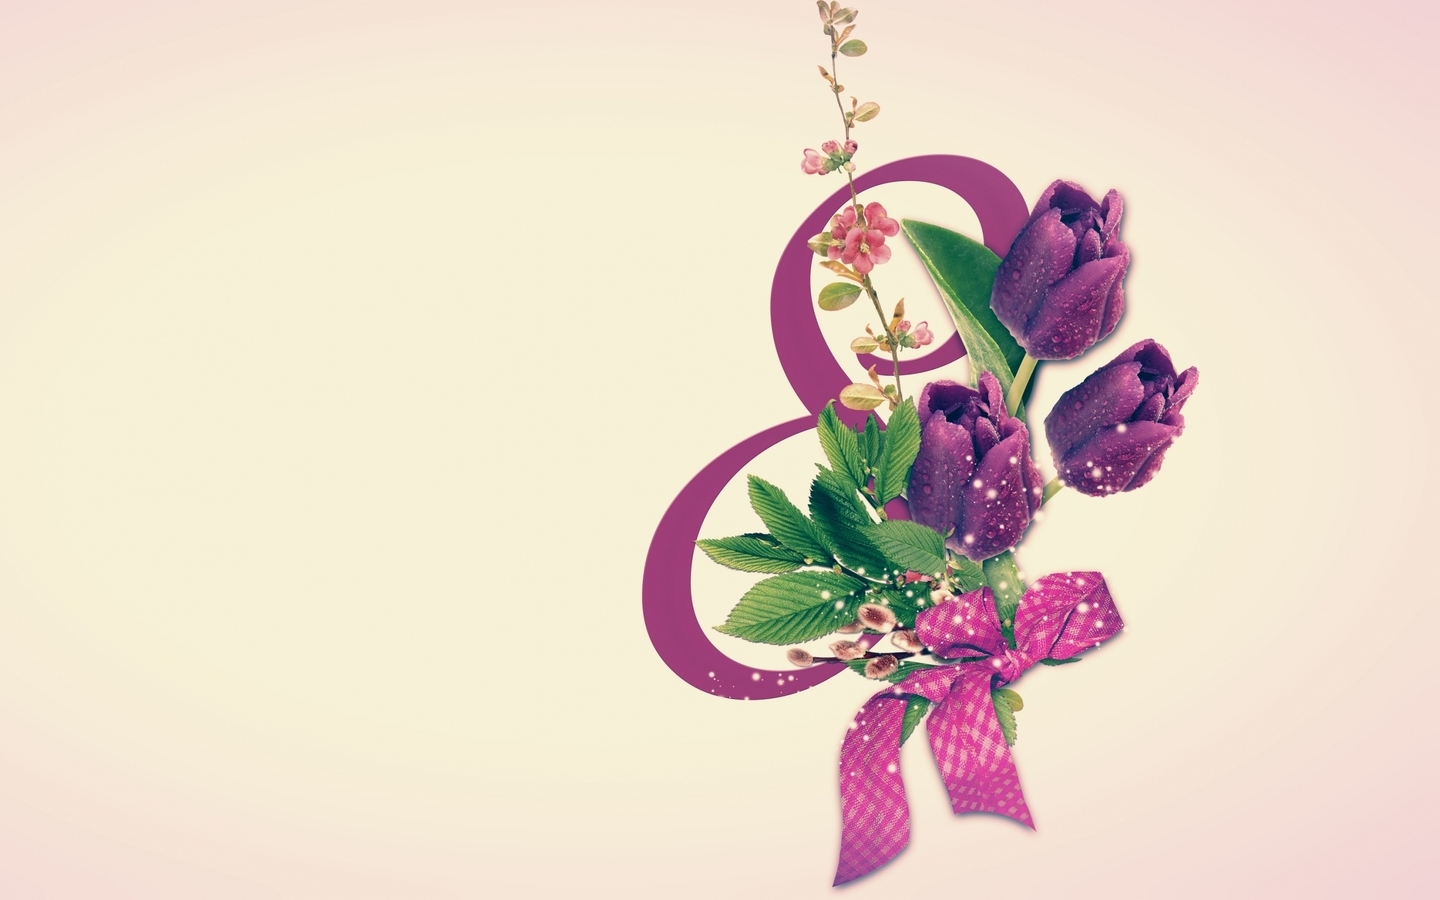 Картинка: 8 Марта, весна, цветы, тюльпаны, бантик, международный женский день, открытка